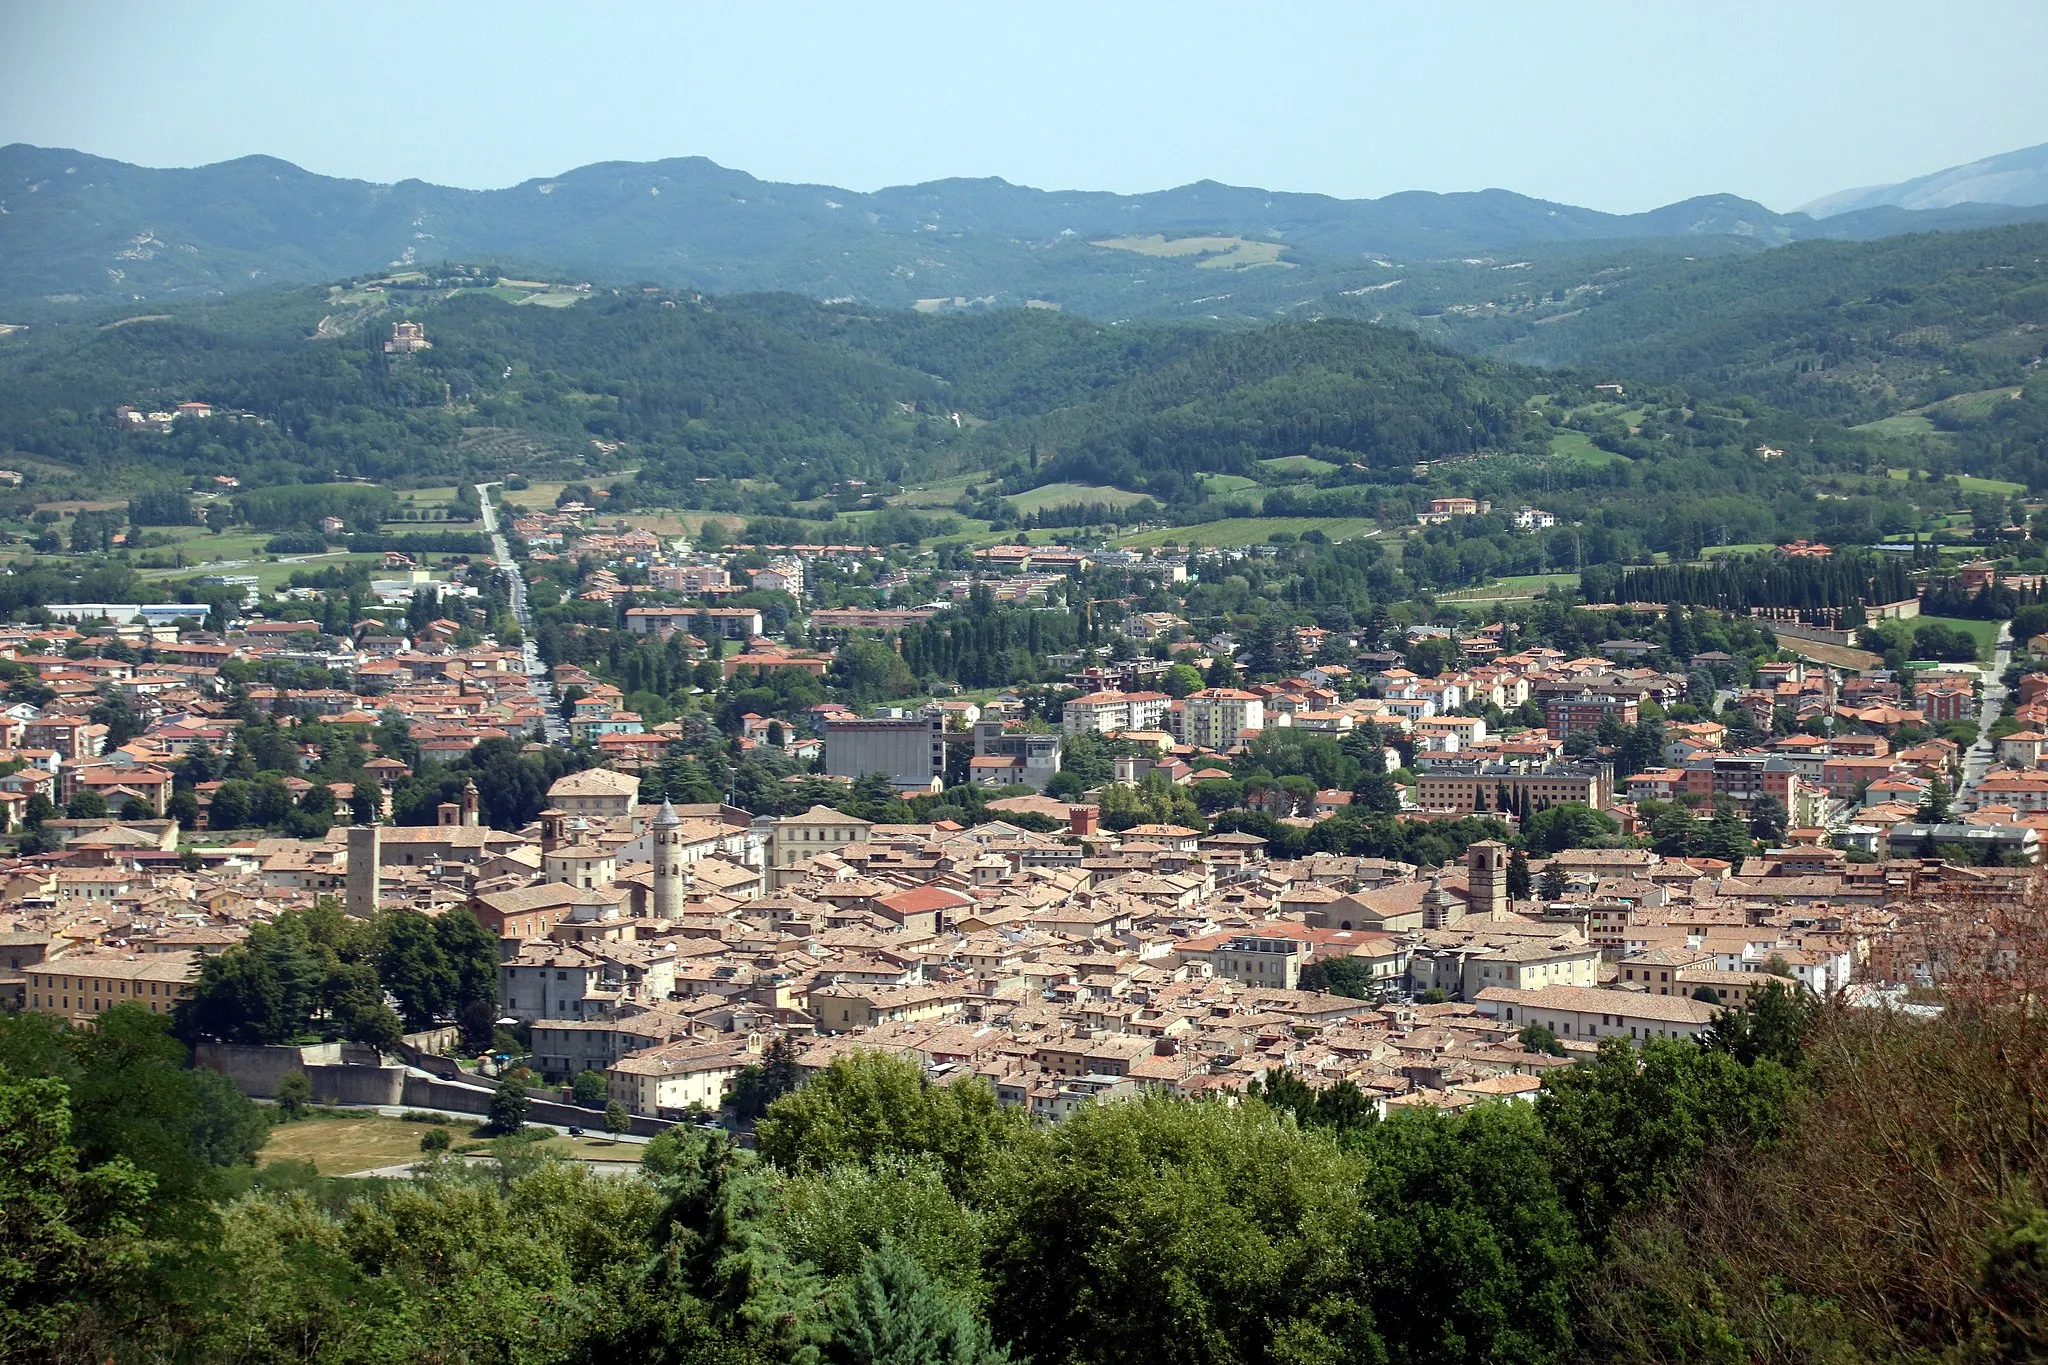 Image of Città di Castello